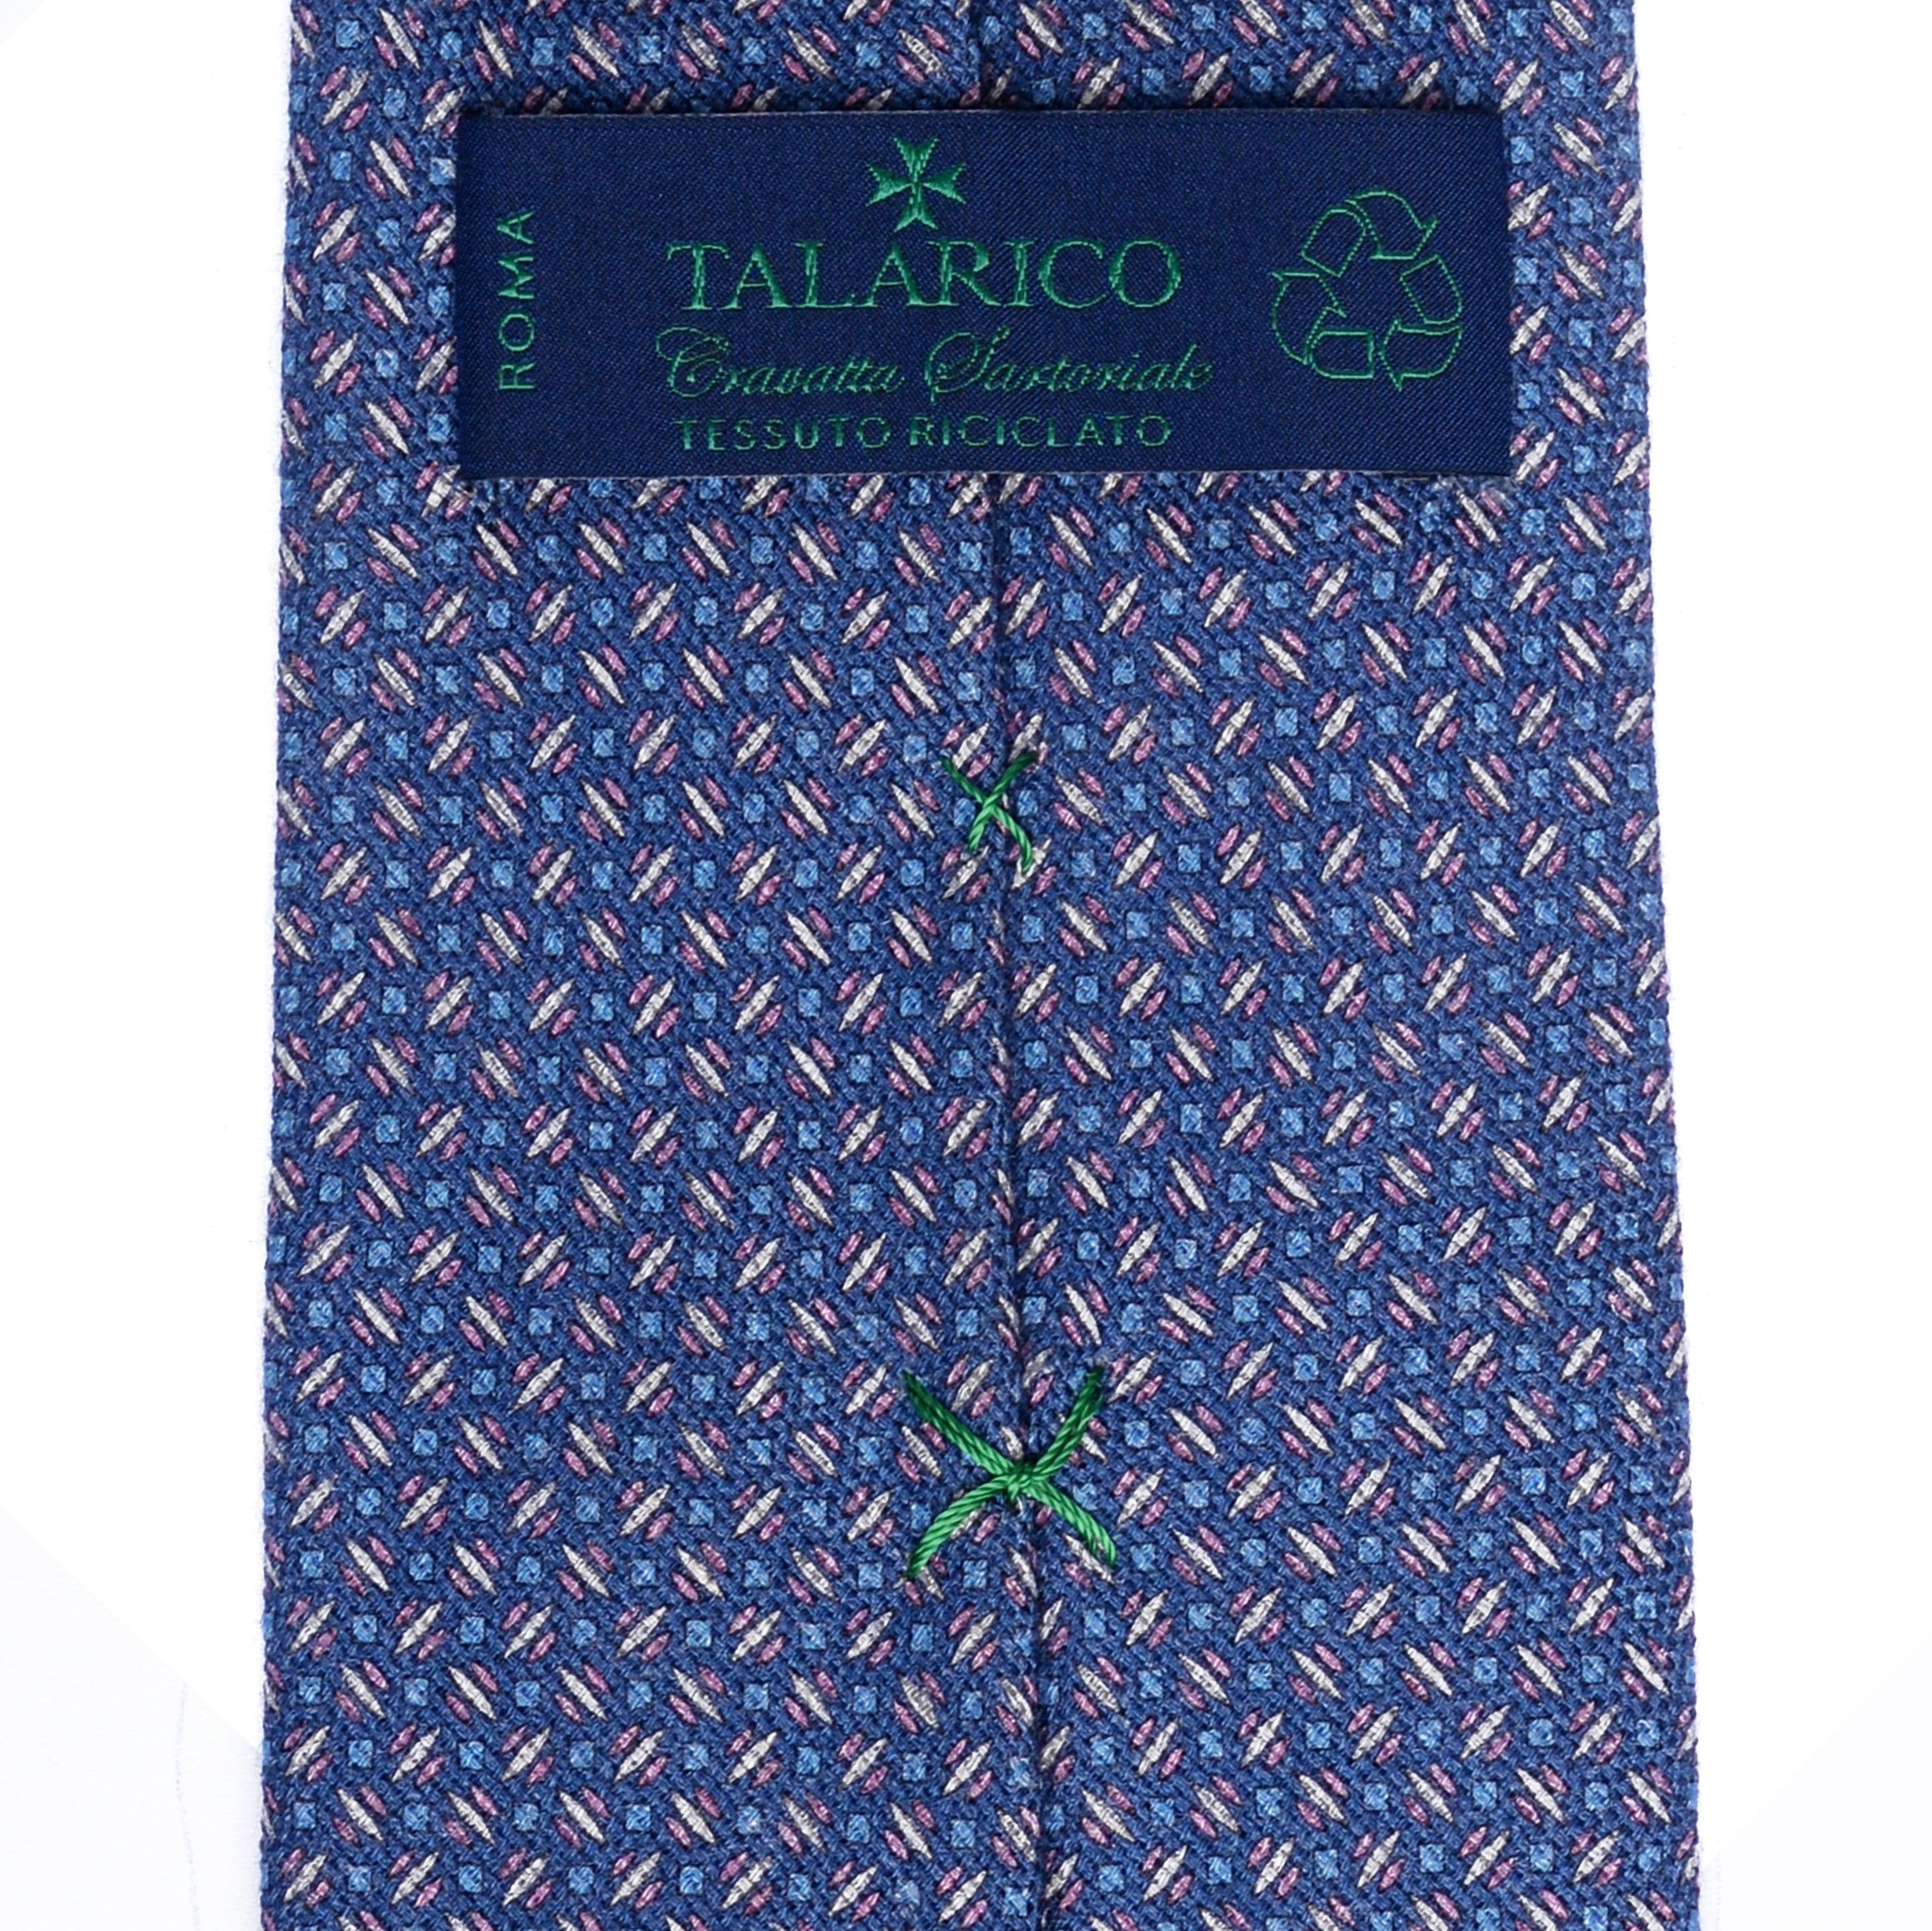 Cravatta 3 Pieghe Riciclate TAL 336 - Talarico Cravatte